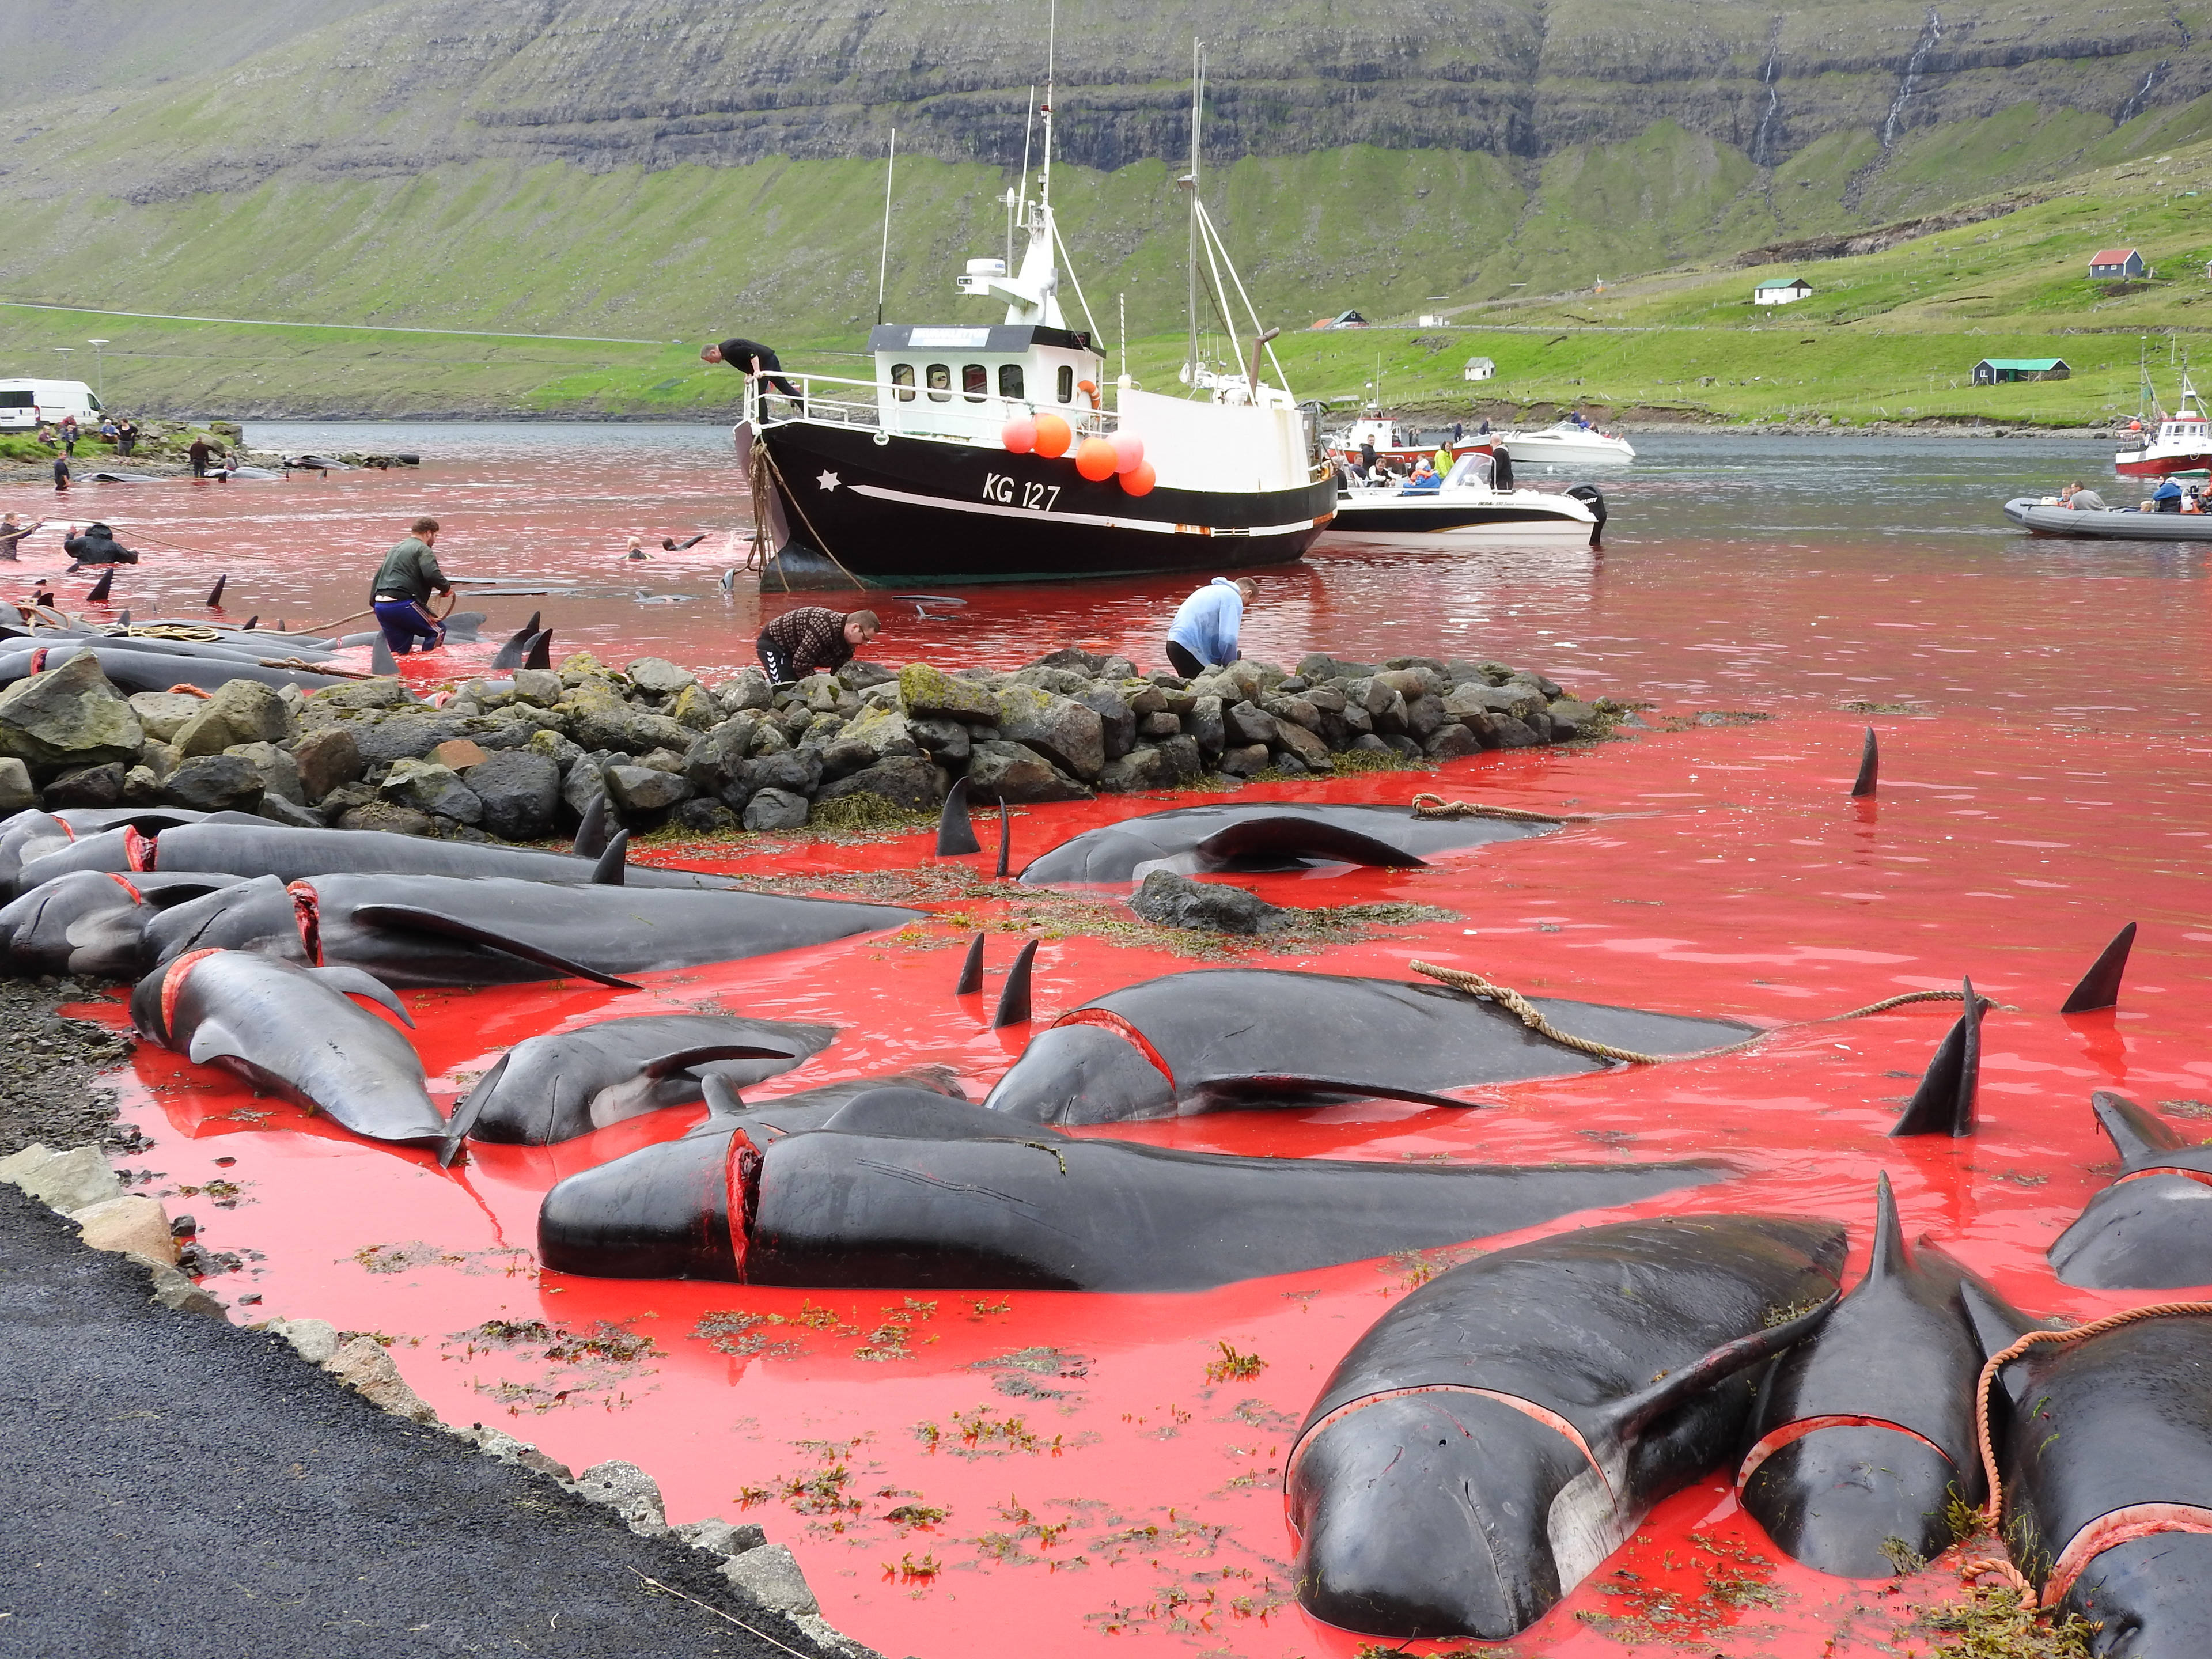 原创传统文化还是野蛮陋习丹麦捕杀175头领航鲸血染鲸湾引发众怒